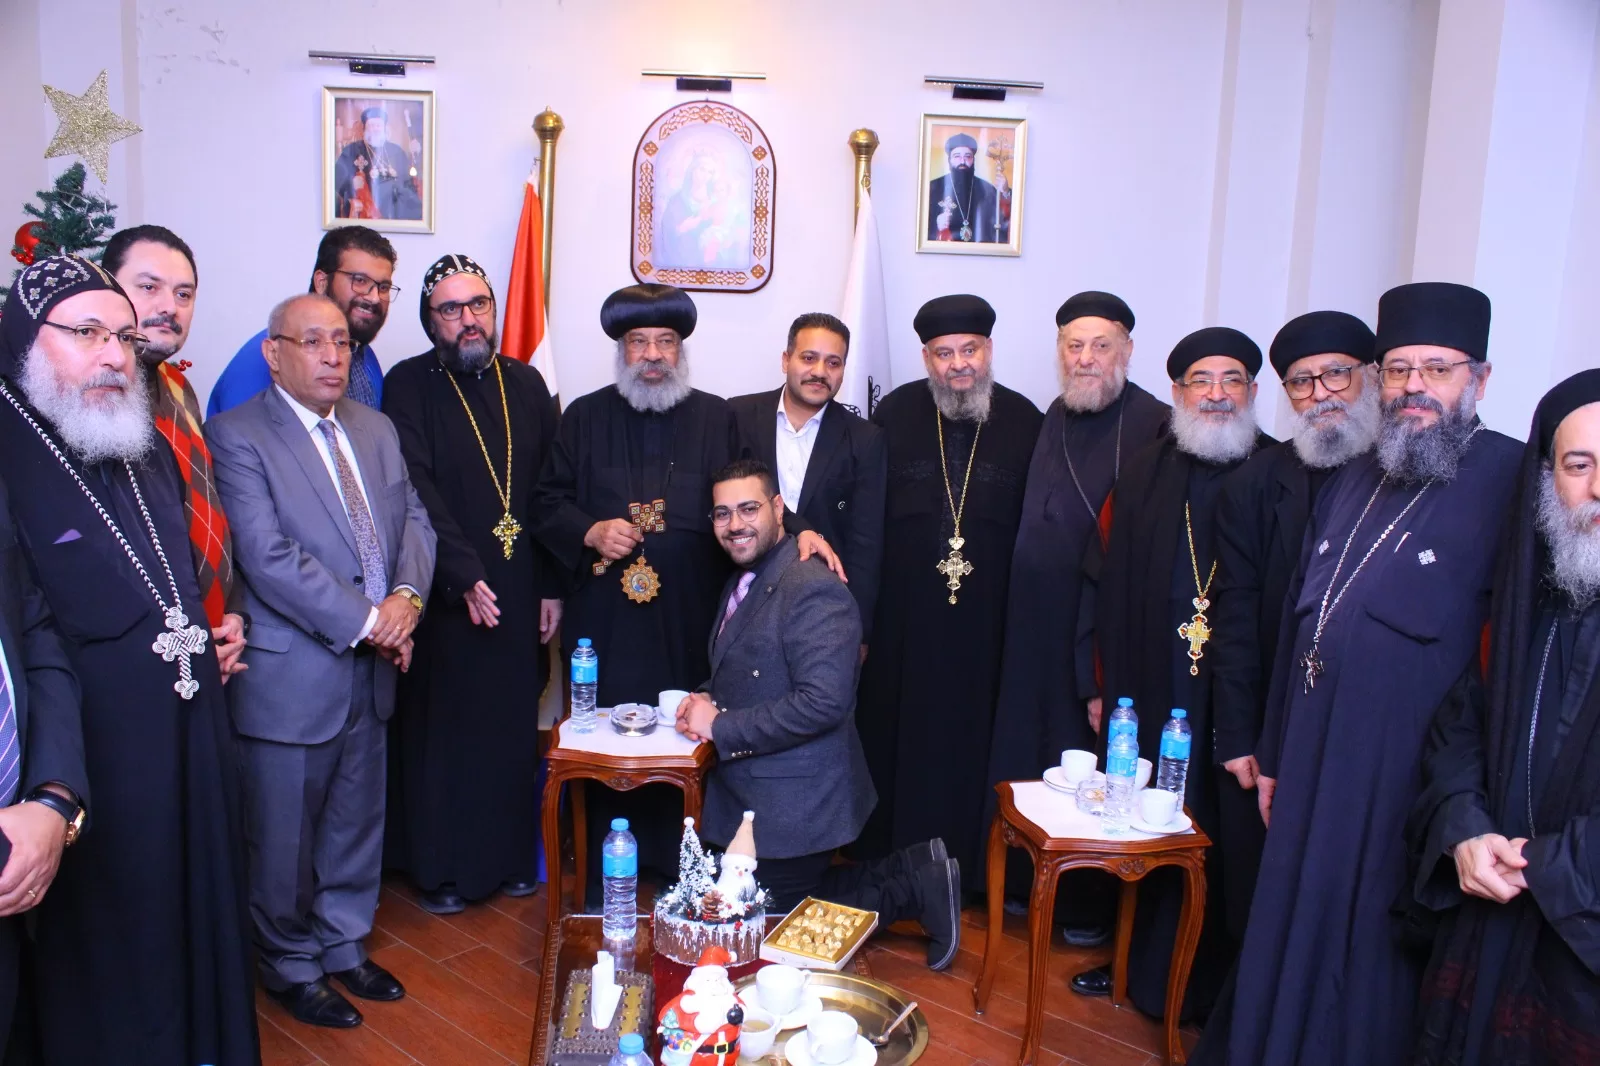 ربان الكنيسة السريانية الأرثوذكسية في مصر يحتفل بقداس عيد الميلاد المجيد.